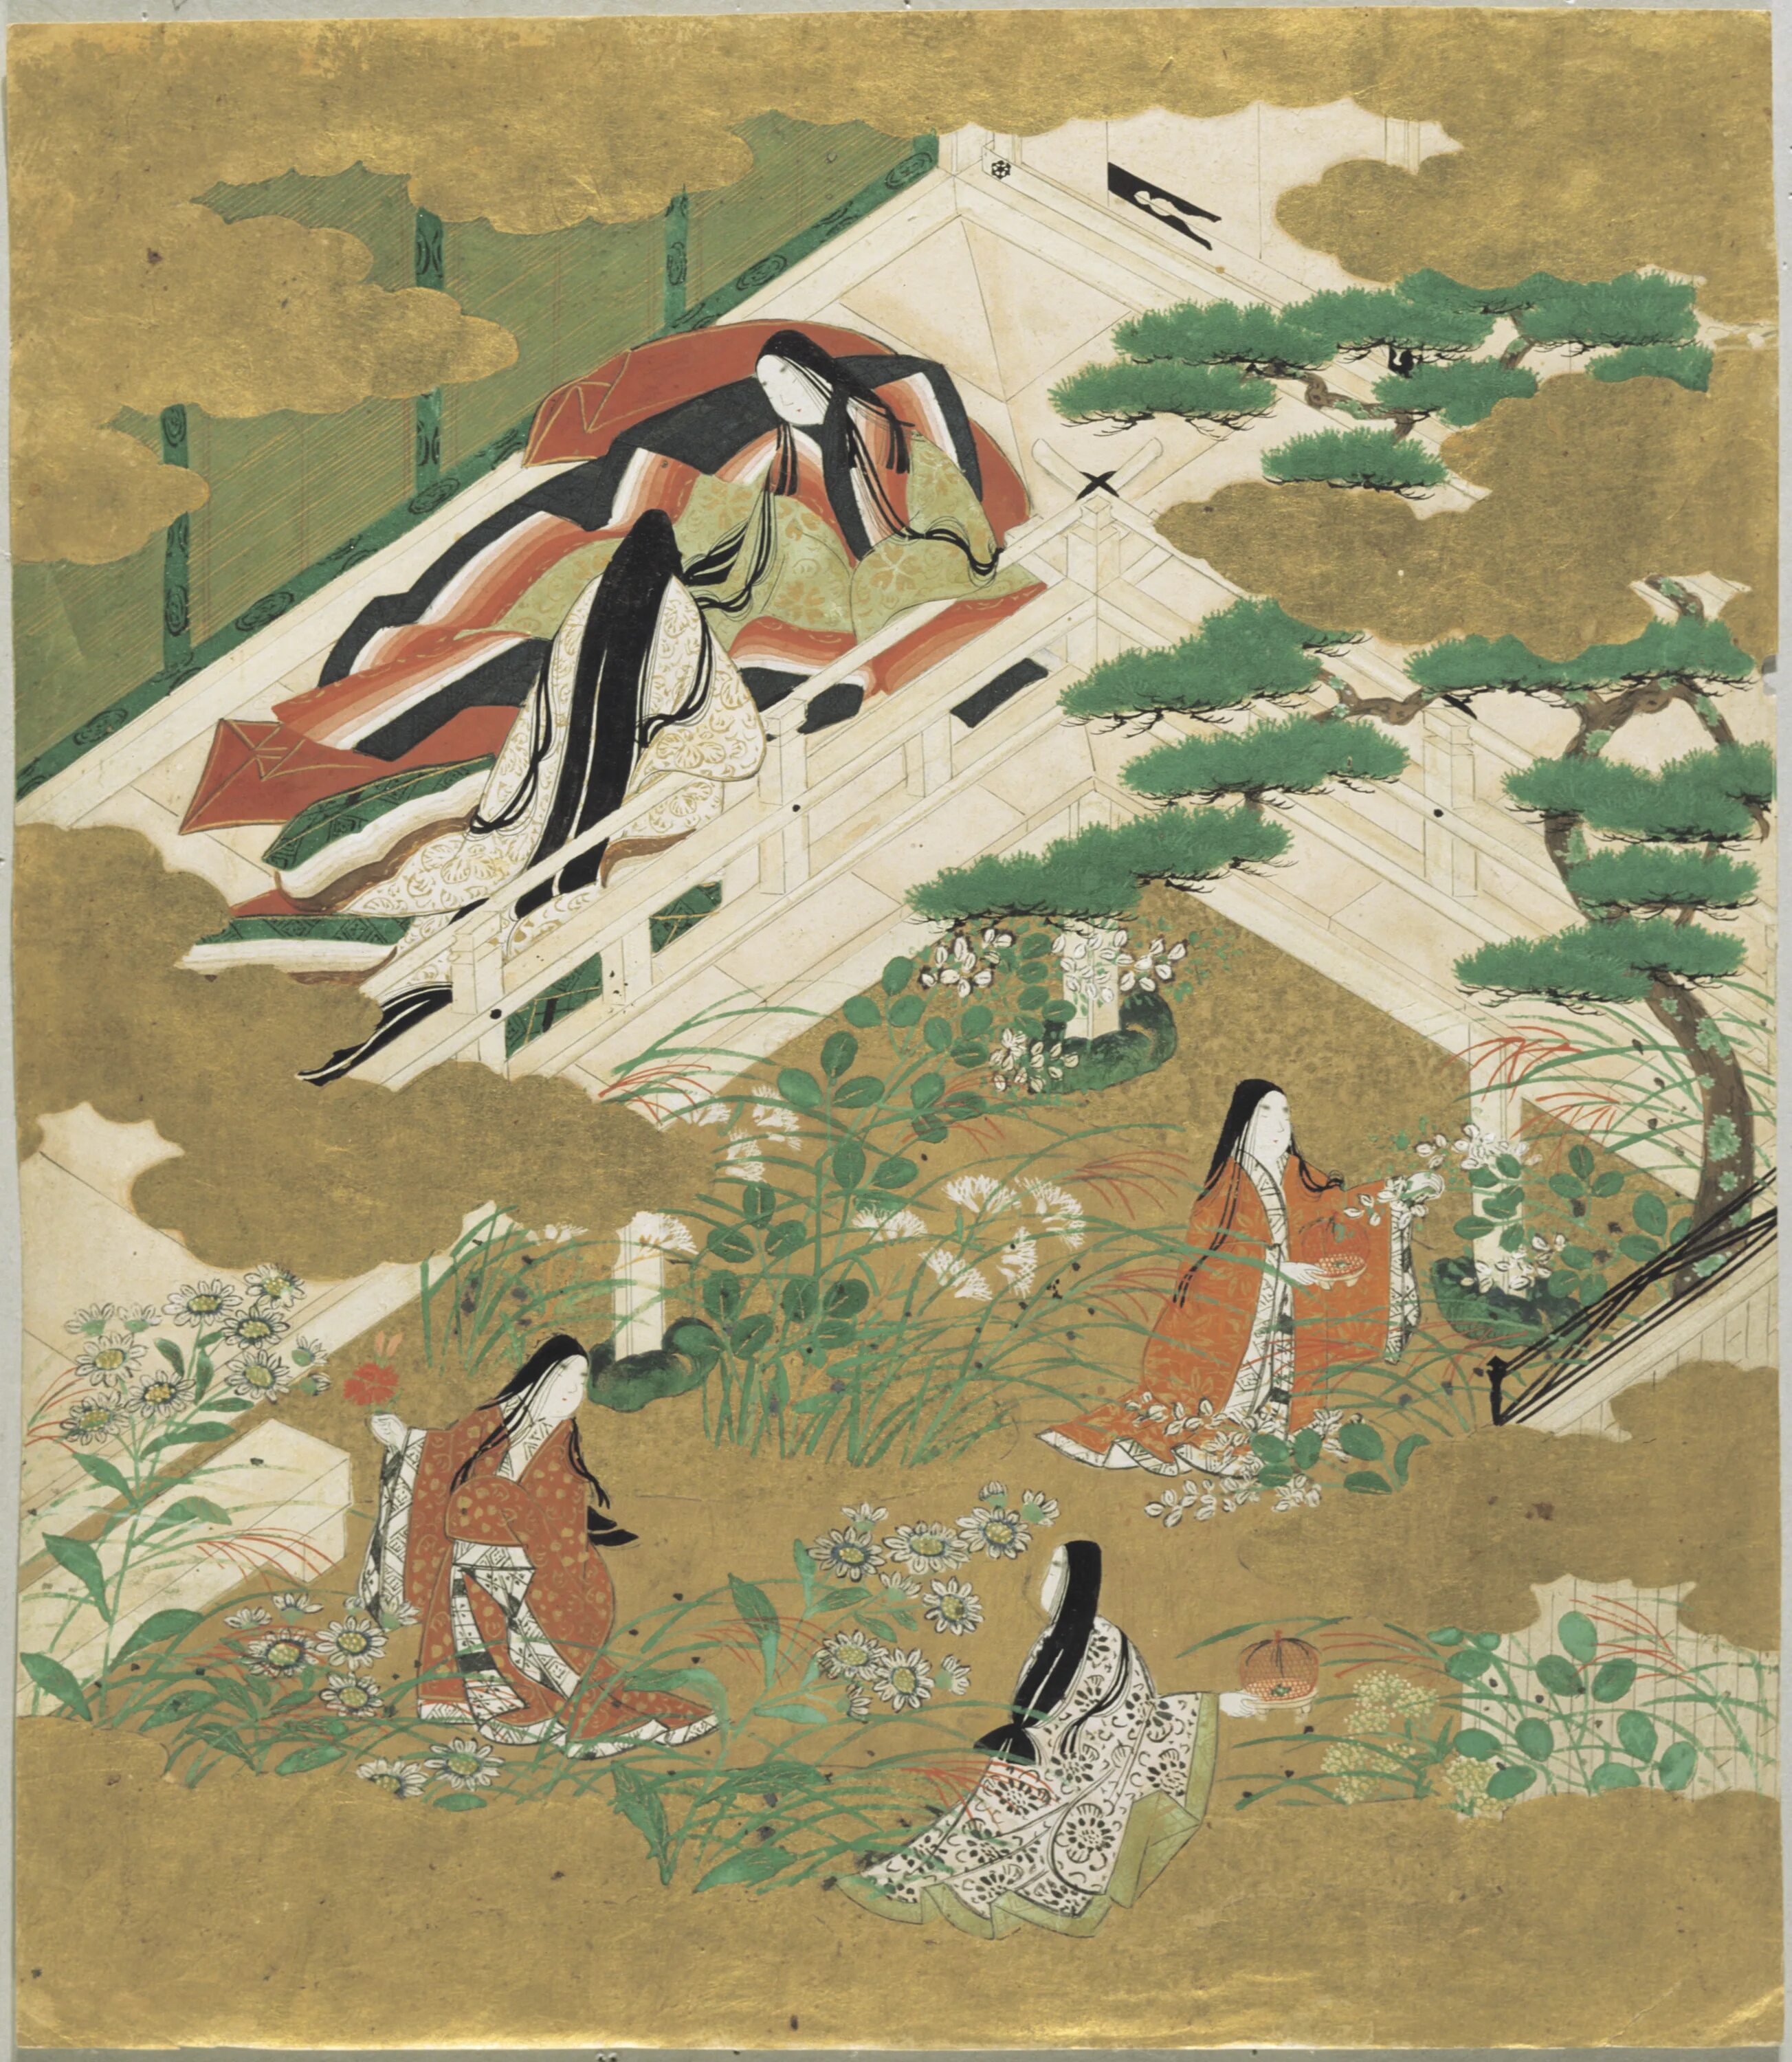 Heian легенды re written. Эпоха Хэйан повесть о Гэндзи. Японская живопись периода Хэйан. Гэндзи моногатари. Период Хэйан в Японии живопись.